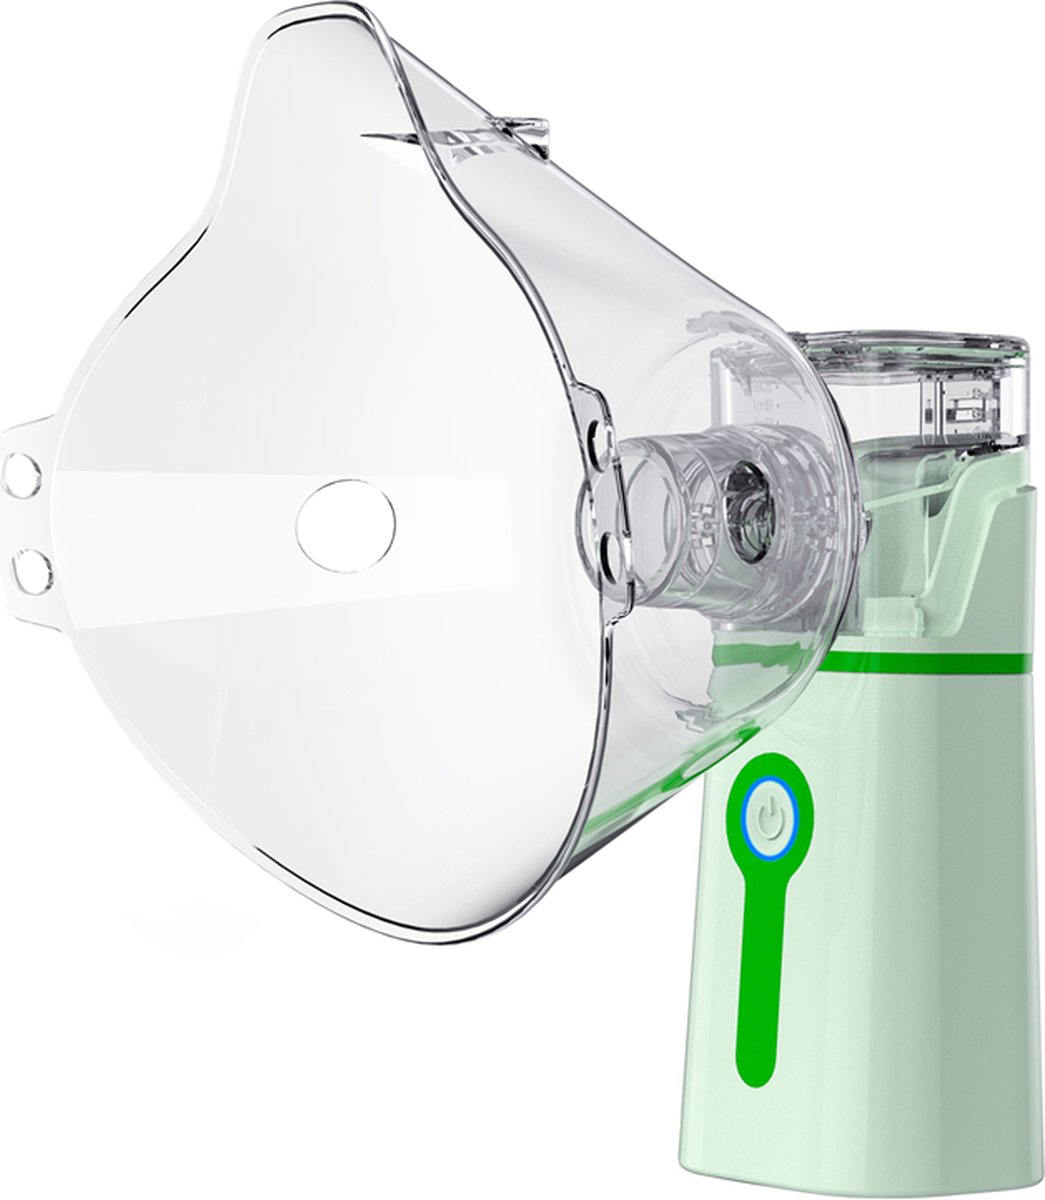 Creartix - Aerosoltoestel - Ultrasone Vernevelaar - Inhalatieapparaat voor kinderen en volwassenen - Inhalator - Aerosol Baby en volwassenen - Waterverstuiver - Inhaler - Helpt tegen Luchtwegaandoeningen - Incl. 2 mondstukken - Groen